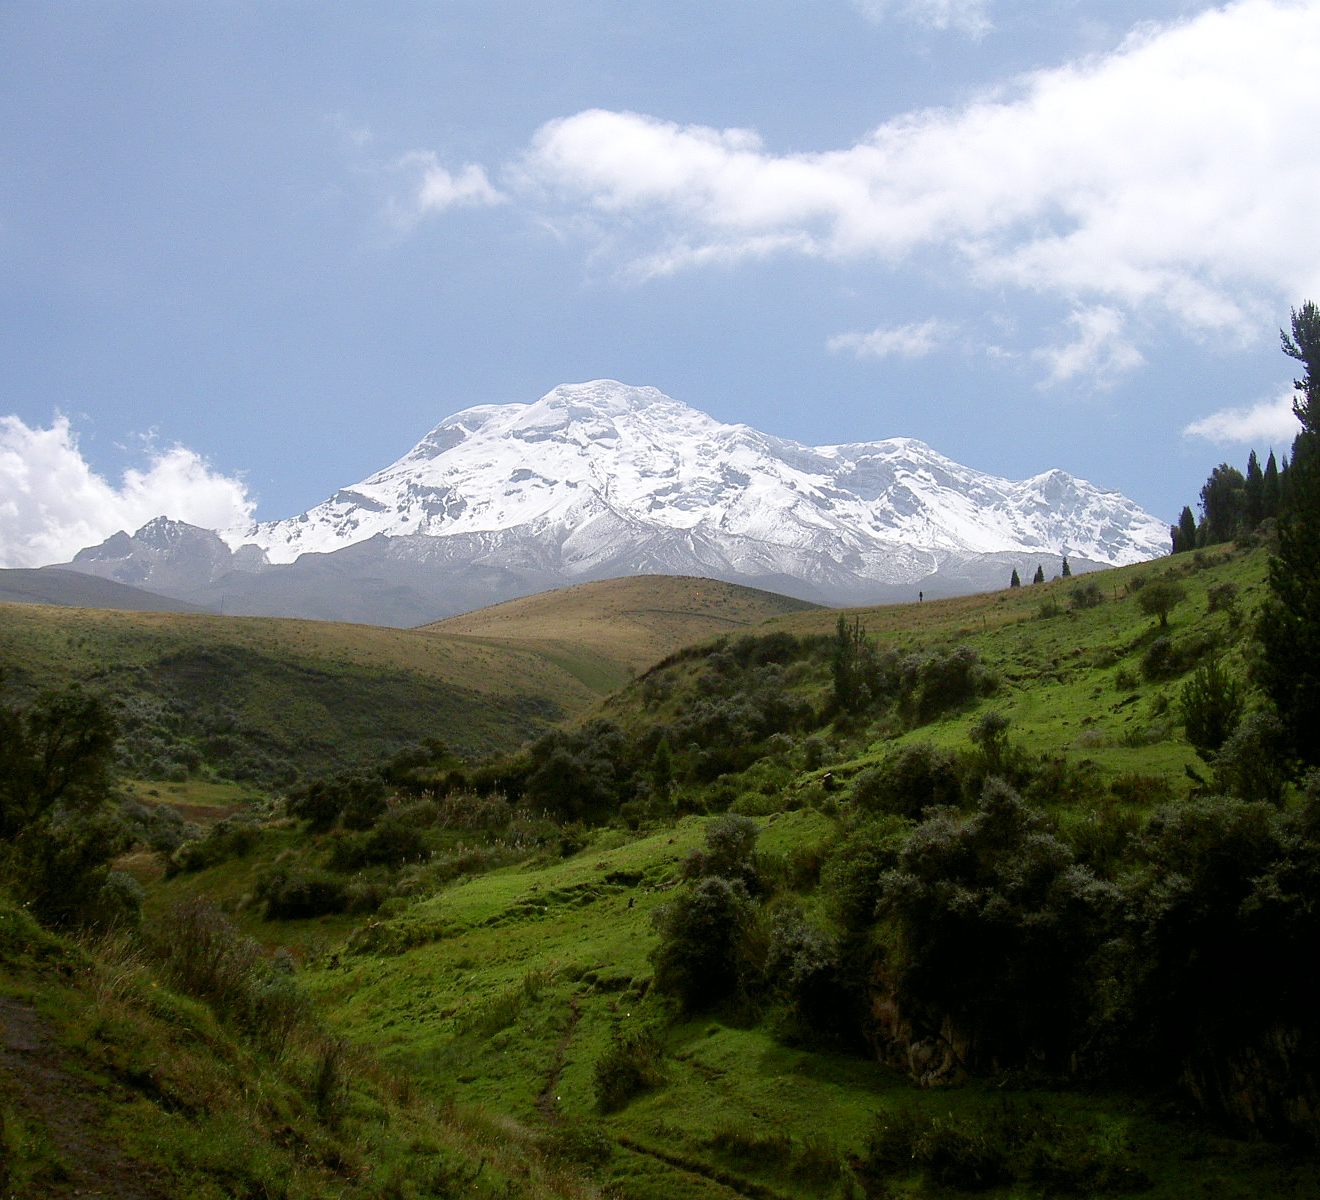 Världens högsta berg, sett genom avstånd från jordens centrum, Chimborazo i Ecuador.